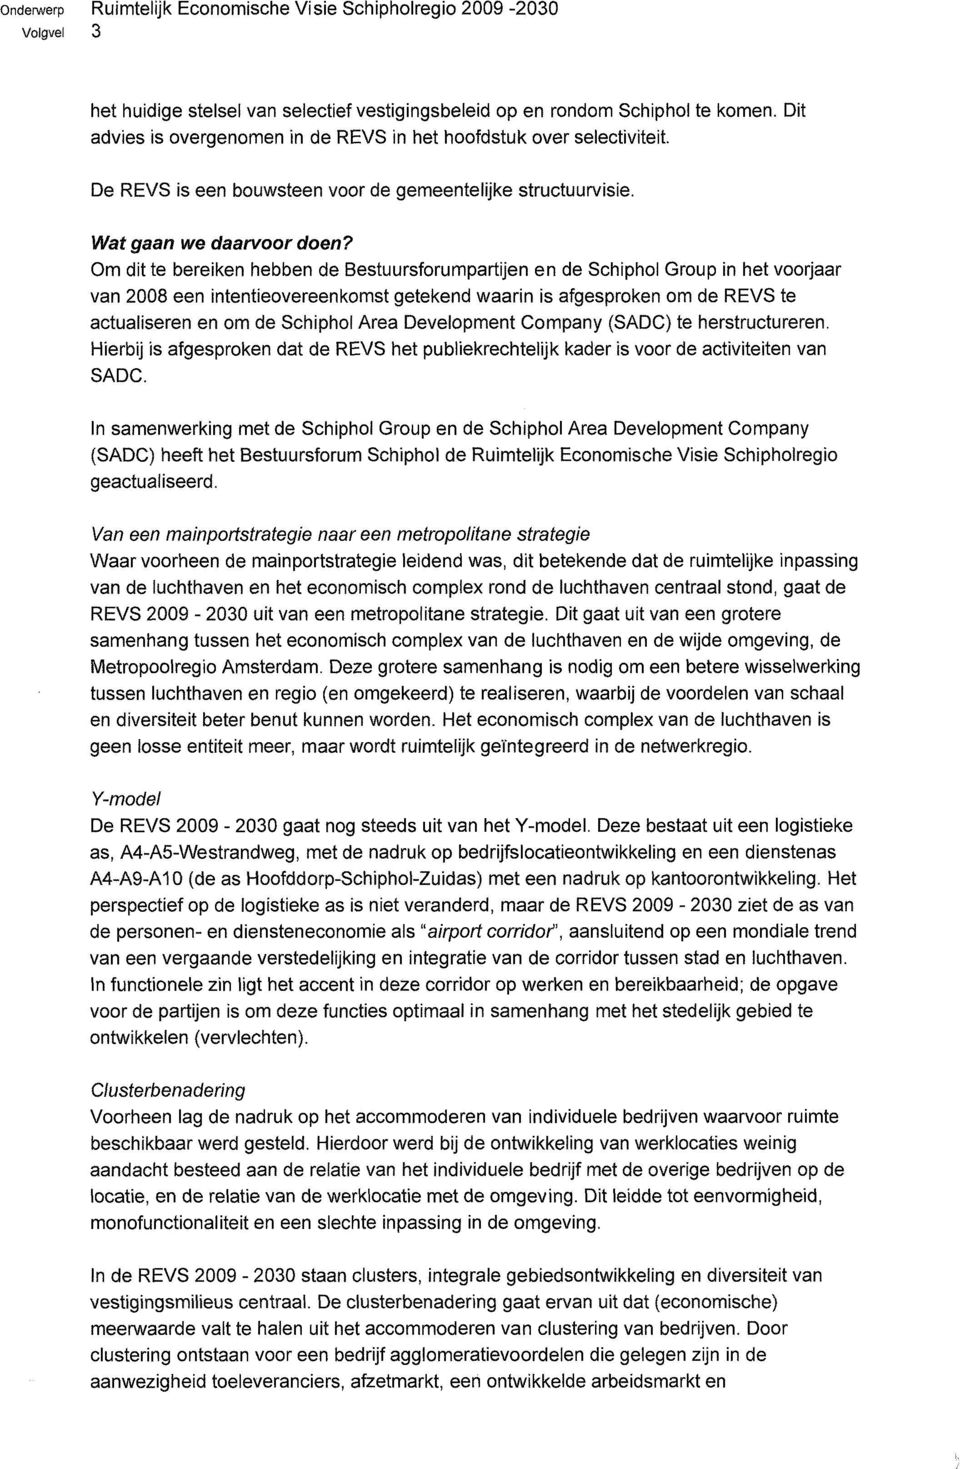 Om dit te bereiken hebben de Bestuursforumpartijen en de Schiphol Group in het voorjaar van 2008 een intentieovereenkomst getekend waarin is afgesproken om de REVS te actualiseren en om de Schiphol